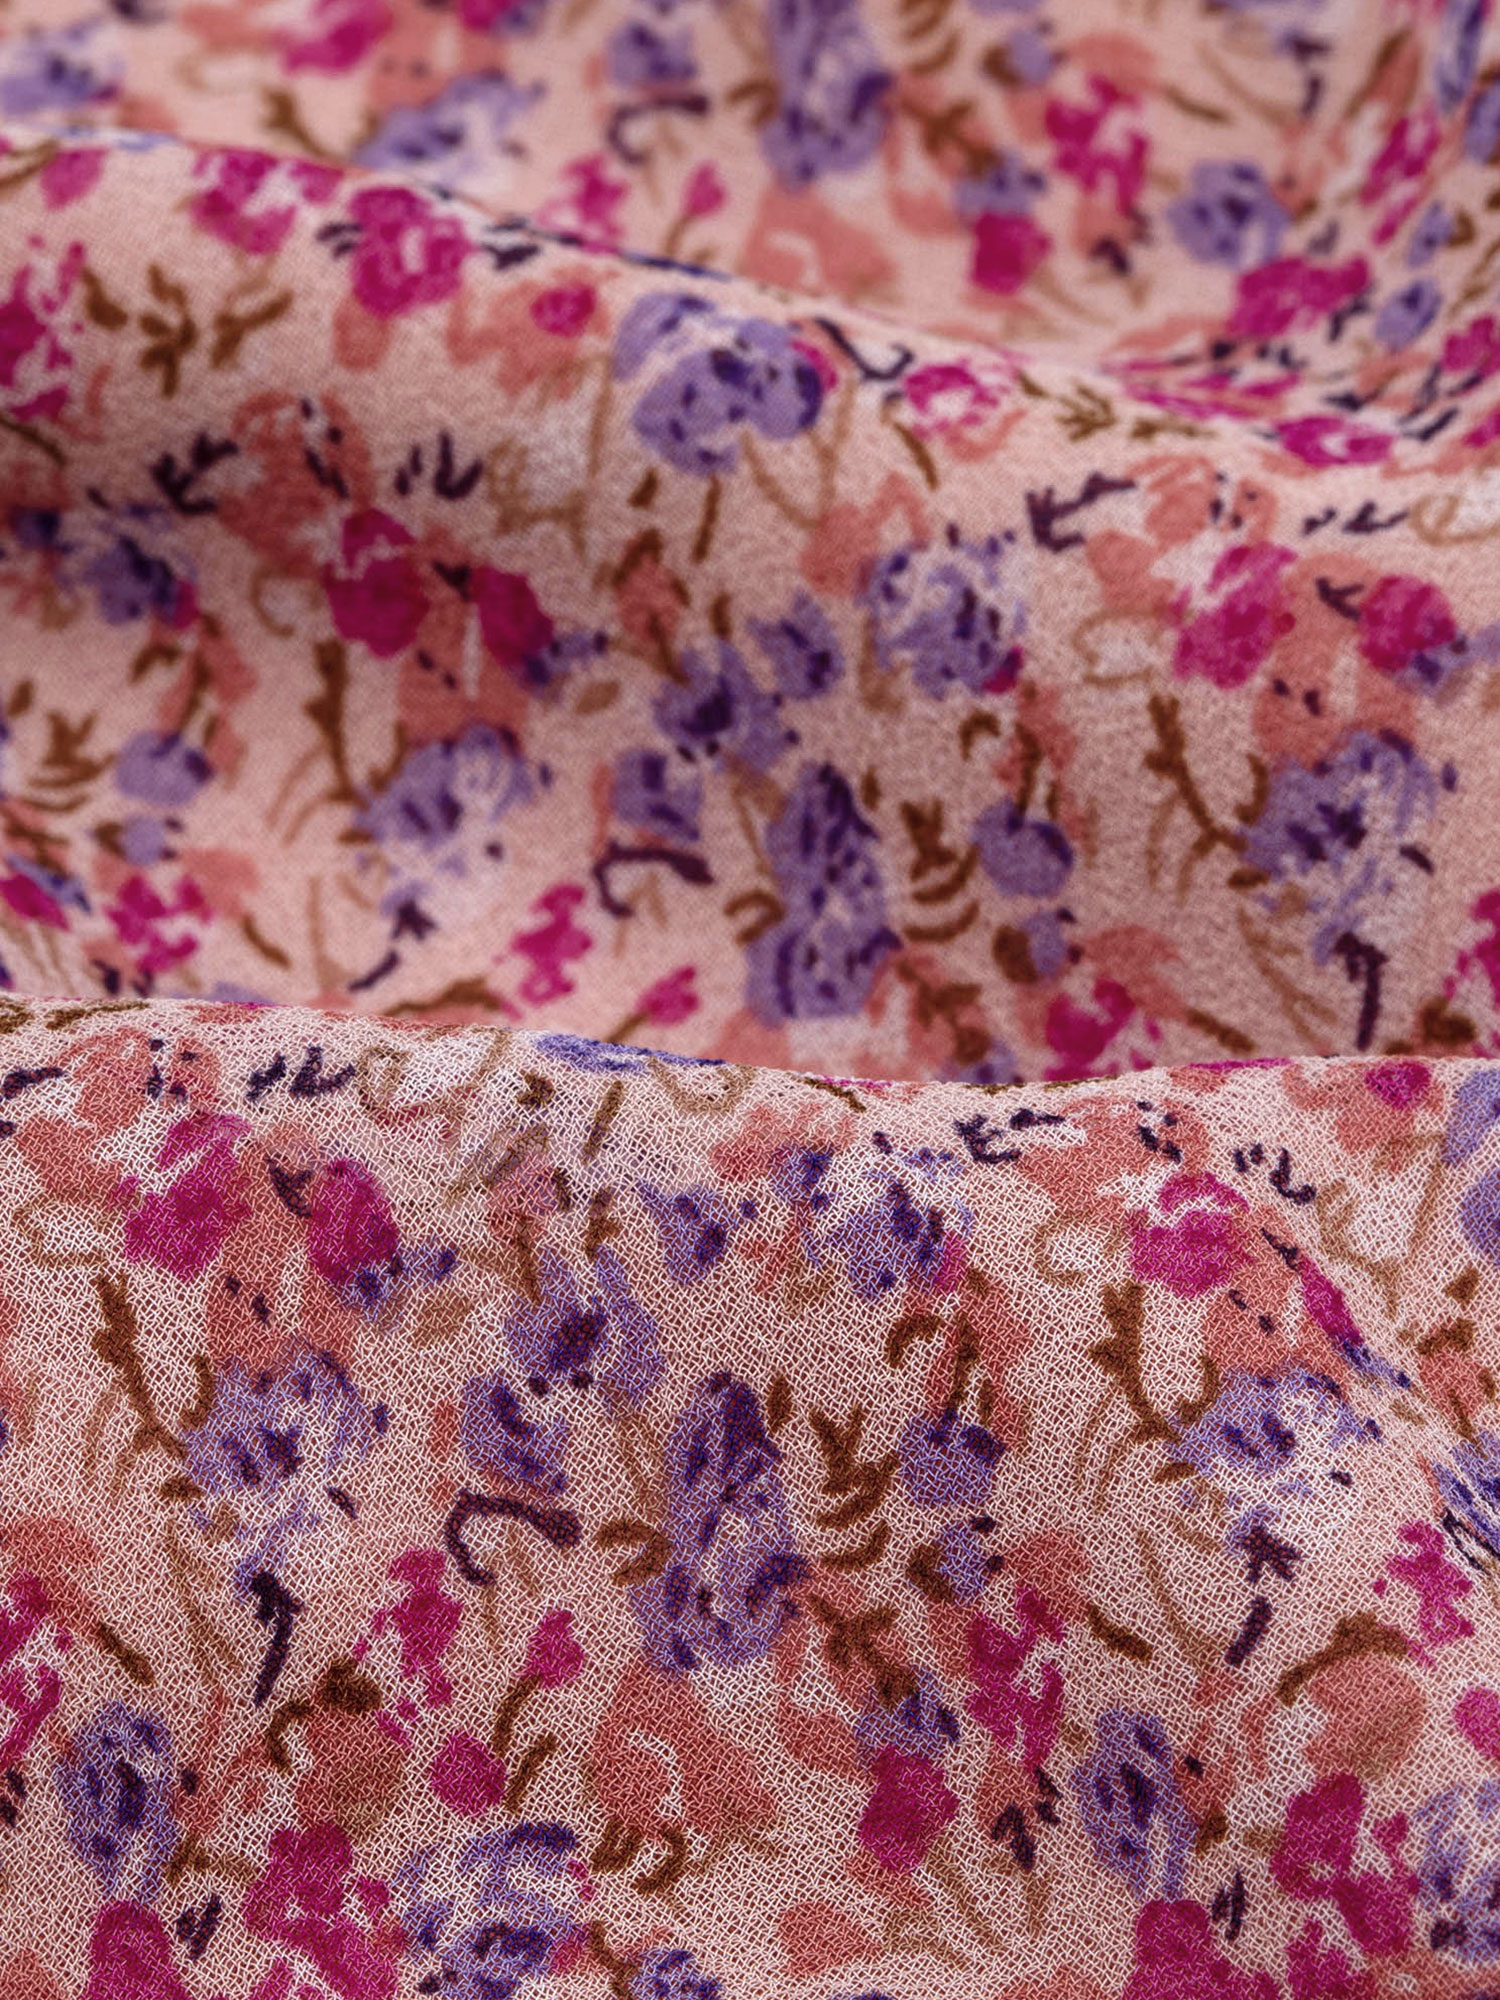 Detailfoto van de mooie bloemenprint van Ydence Top Reese. lichtroze van kleur met lila en roze bloemen. Lichtroze met lila e